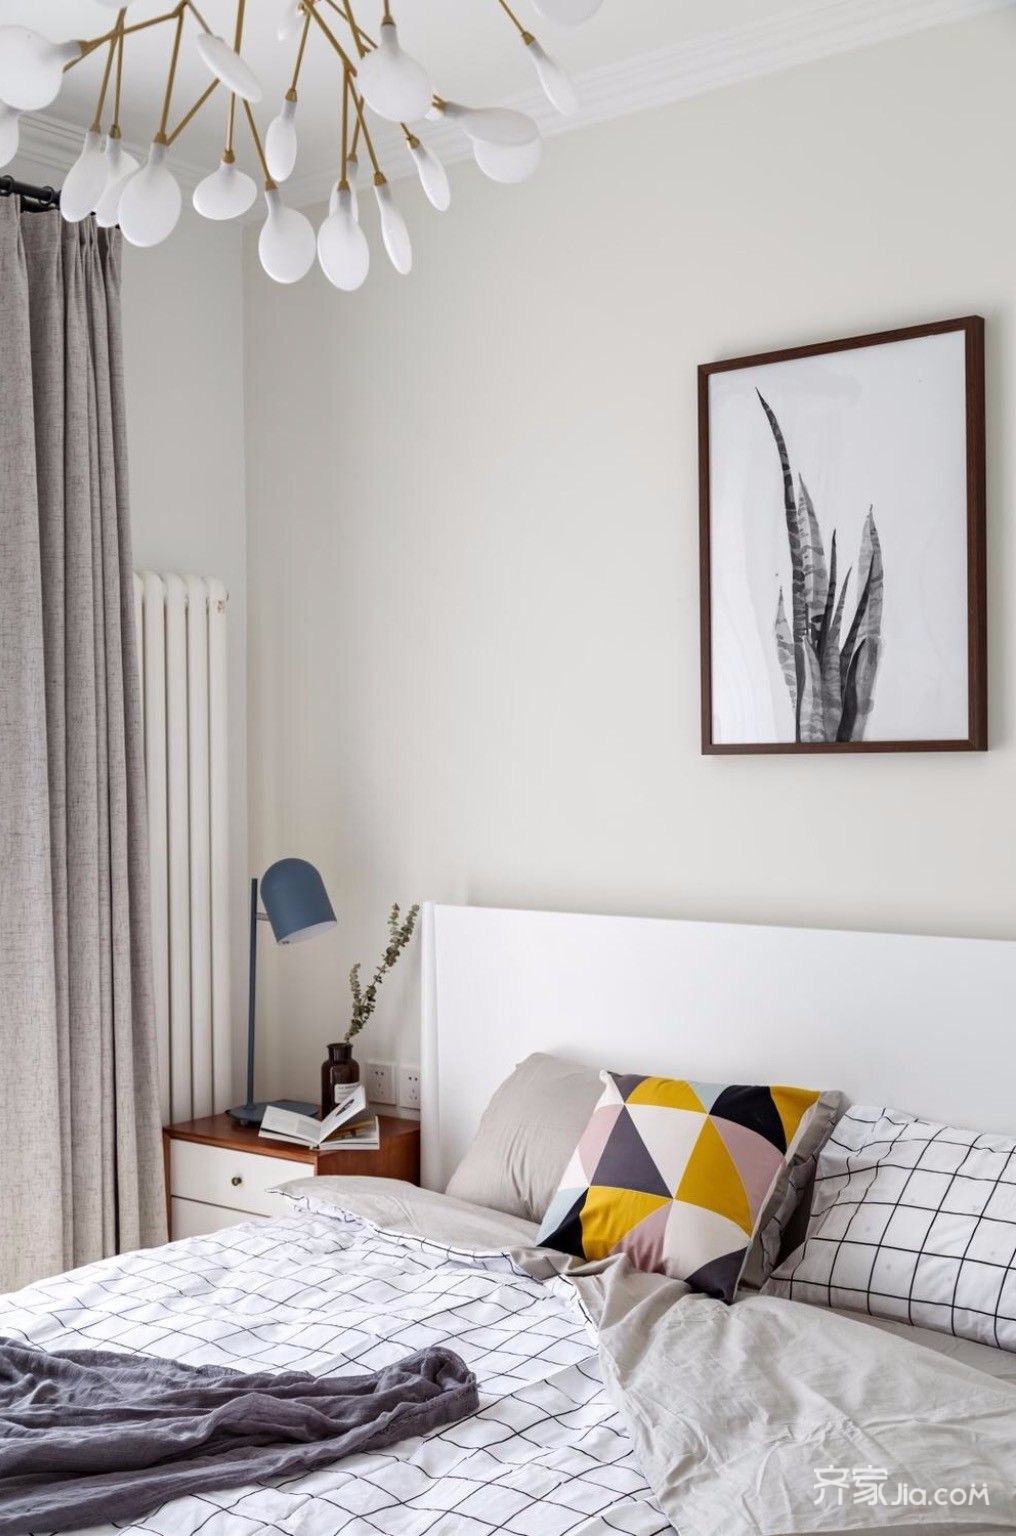 简单而温馨的主卧,浅米色的墙面与纯白色的床品营造出安静的氛围